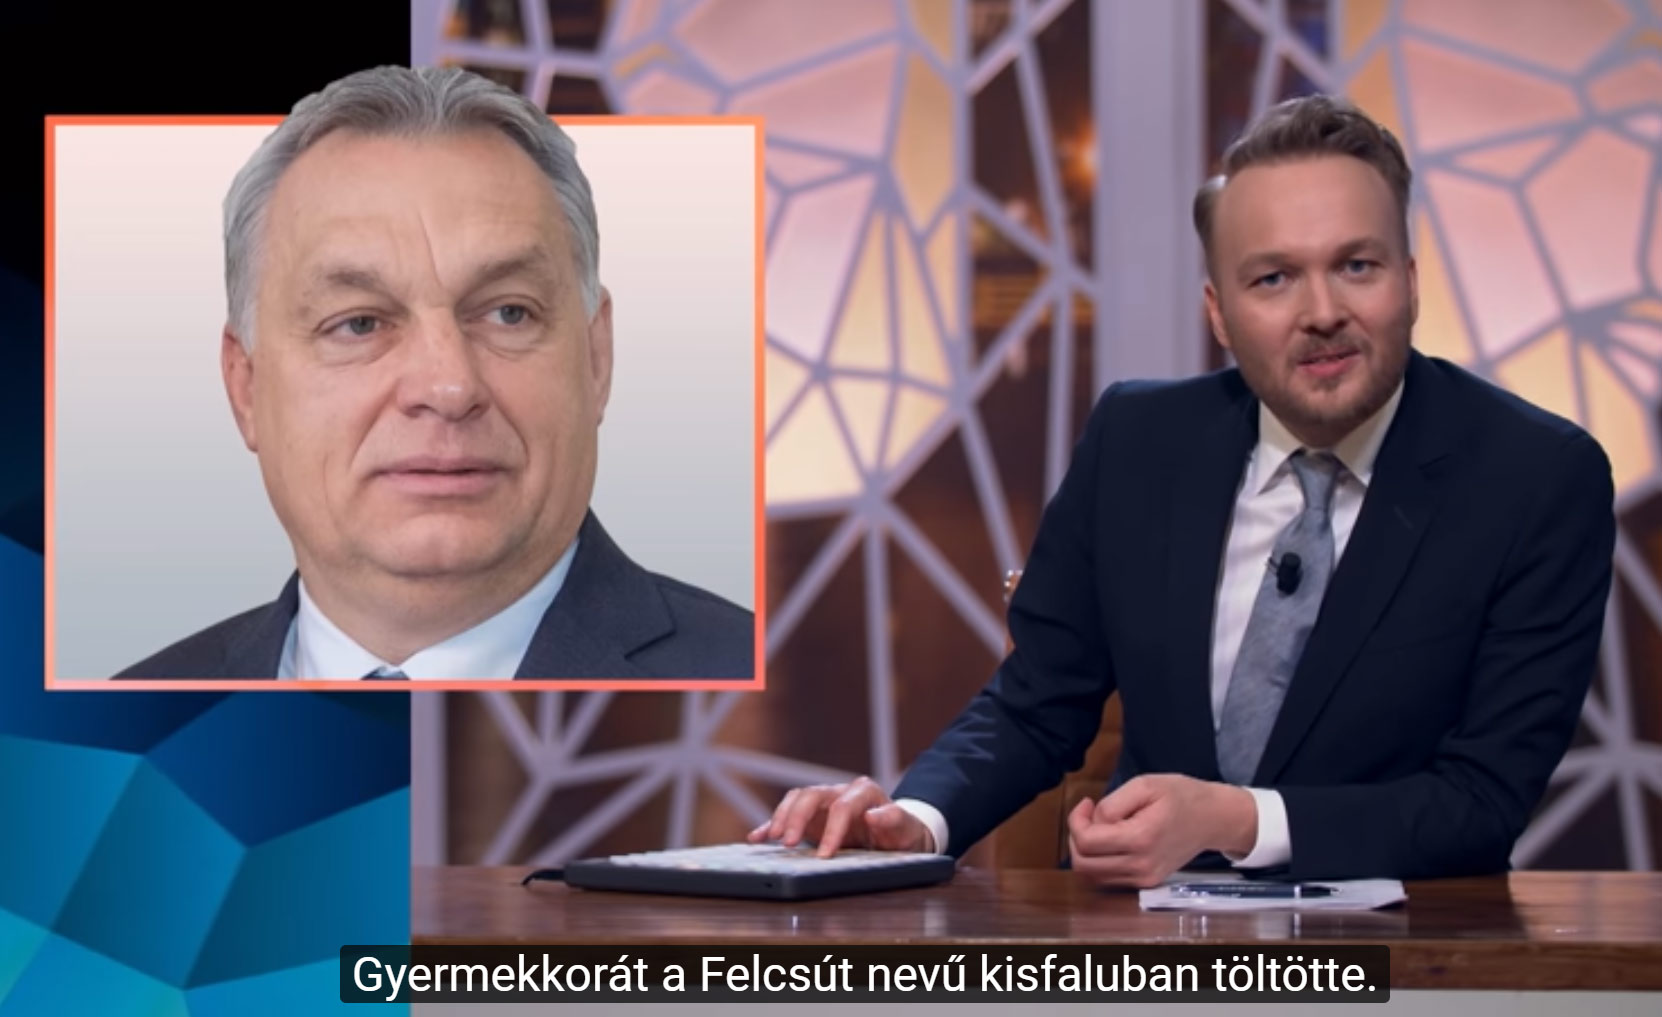 Lefordították magyarra az Orbán Viktort és a Sargentini-jelentést bemutató vicces holland műsort